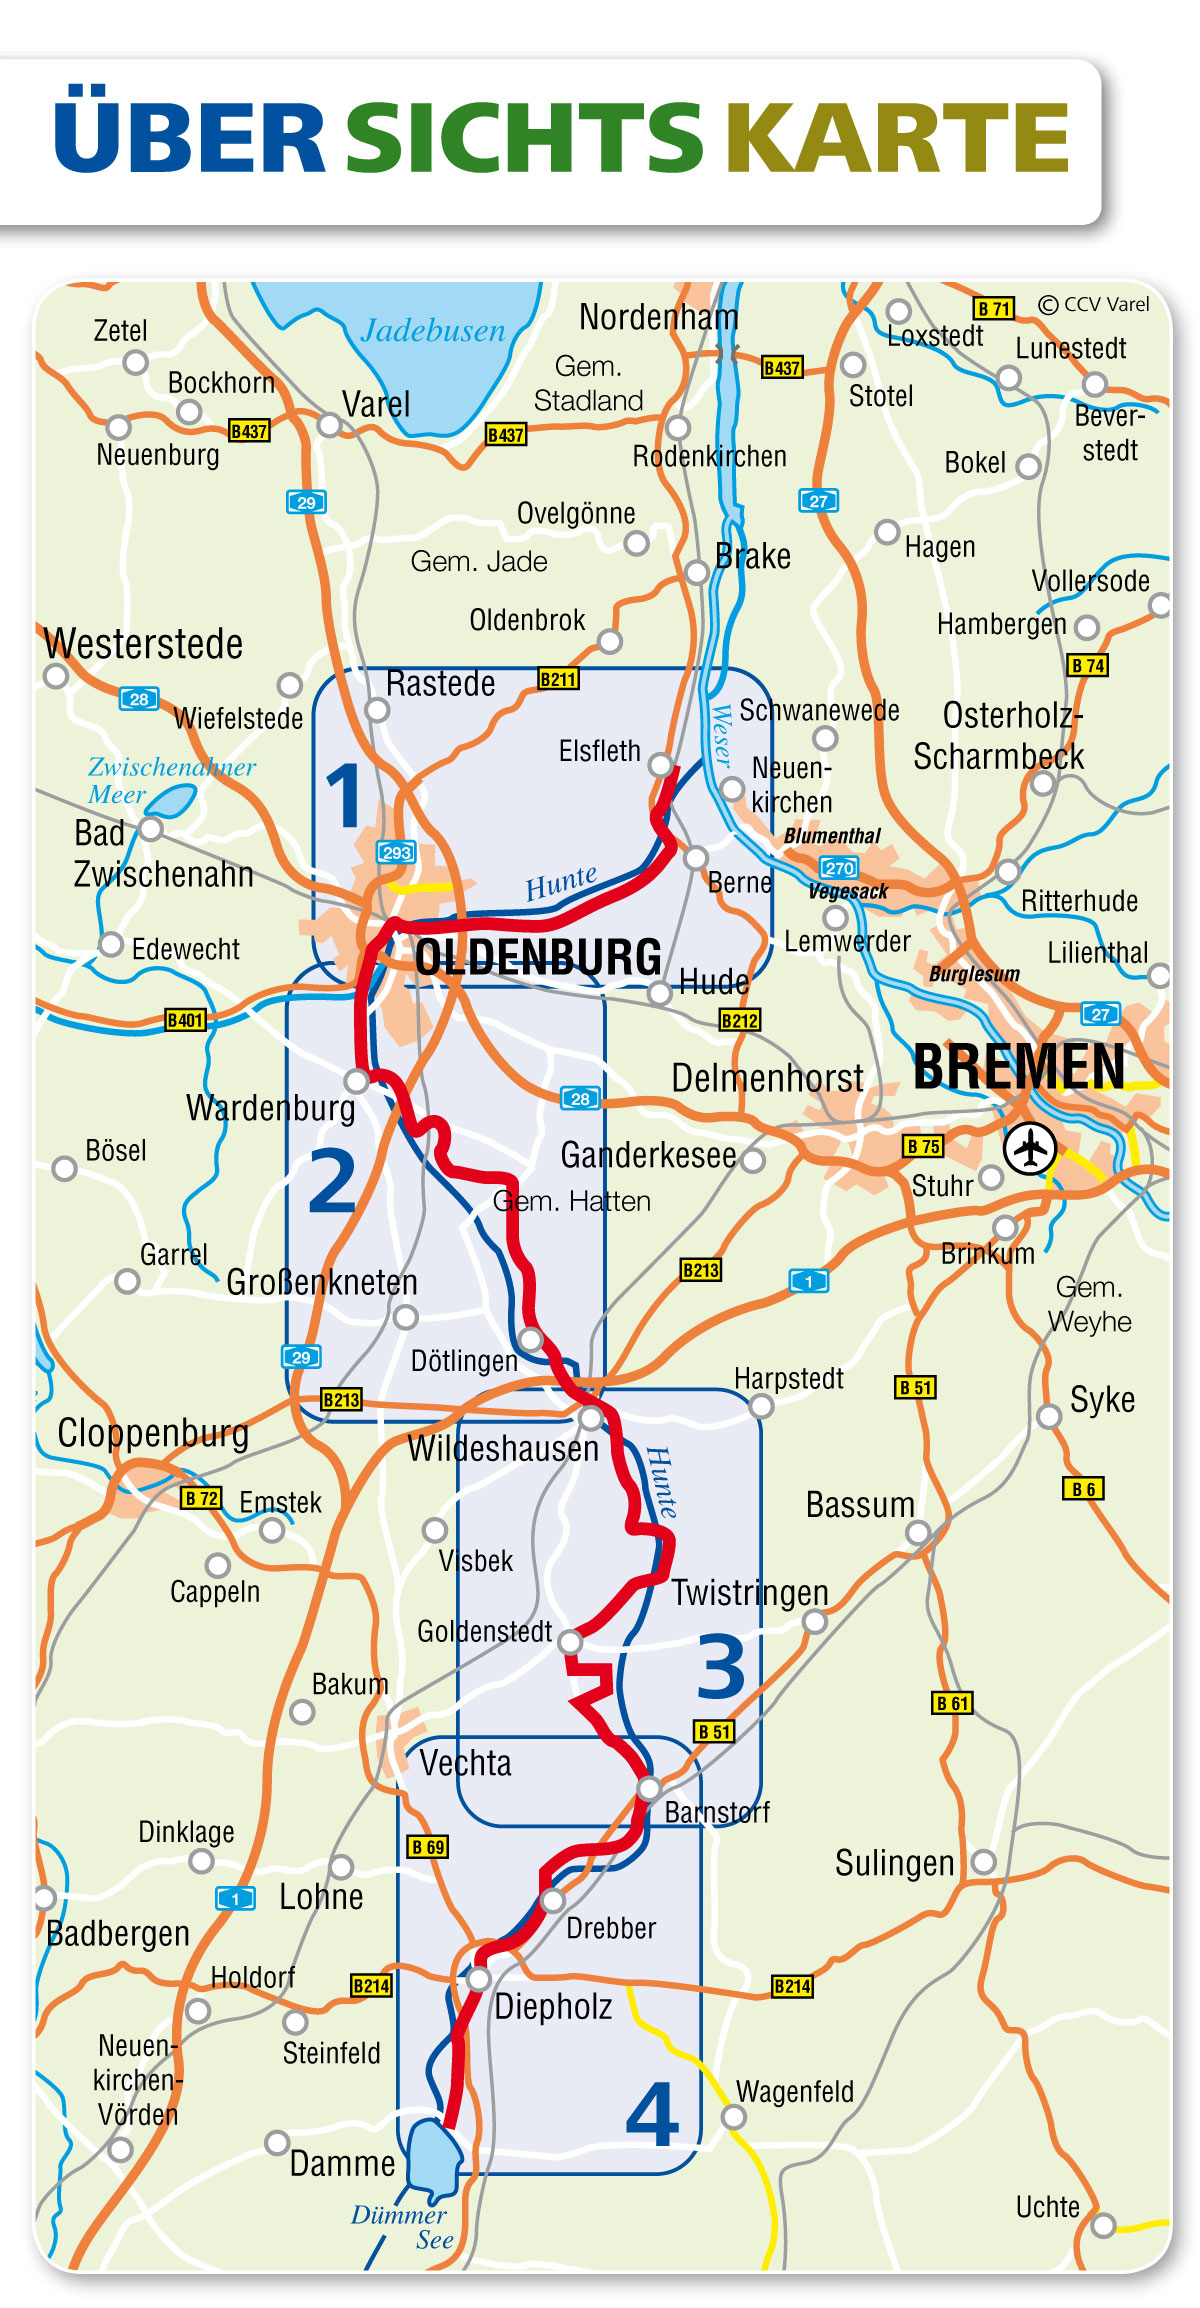 Hunte Radweg - Rad fahren Von der Wesermarsch bis zum Dümmer